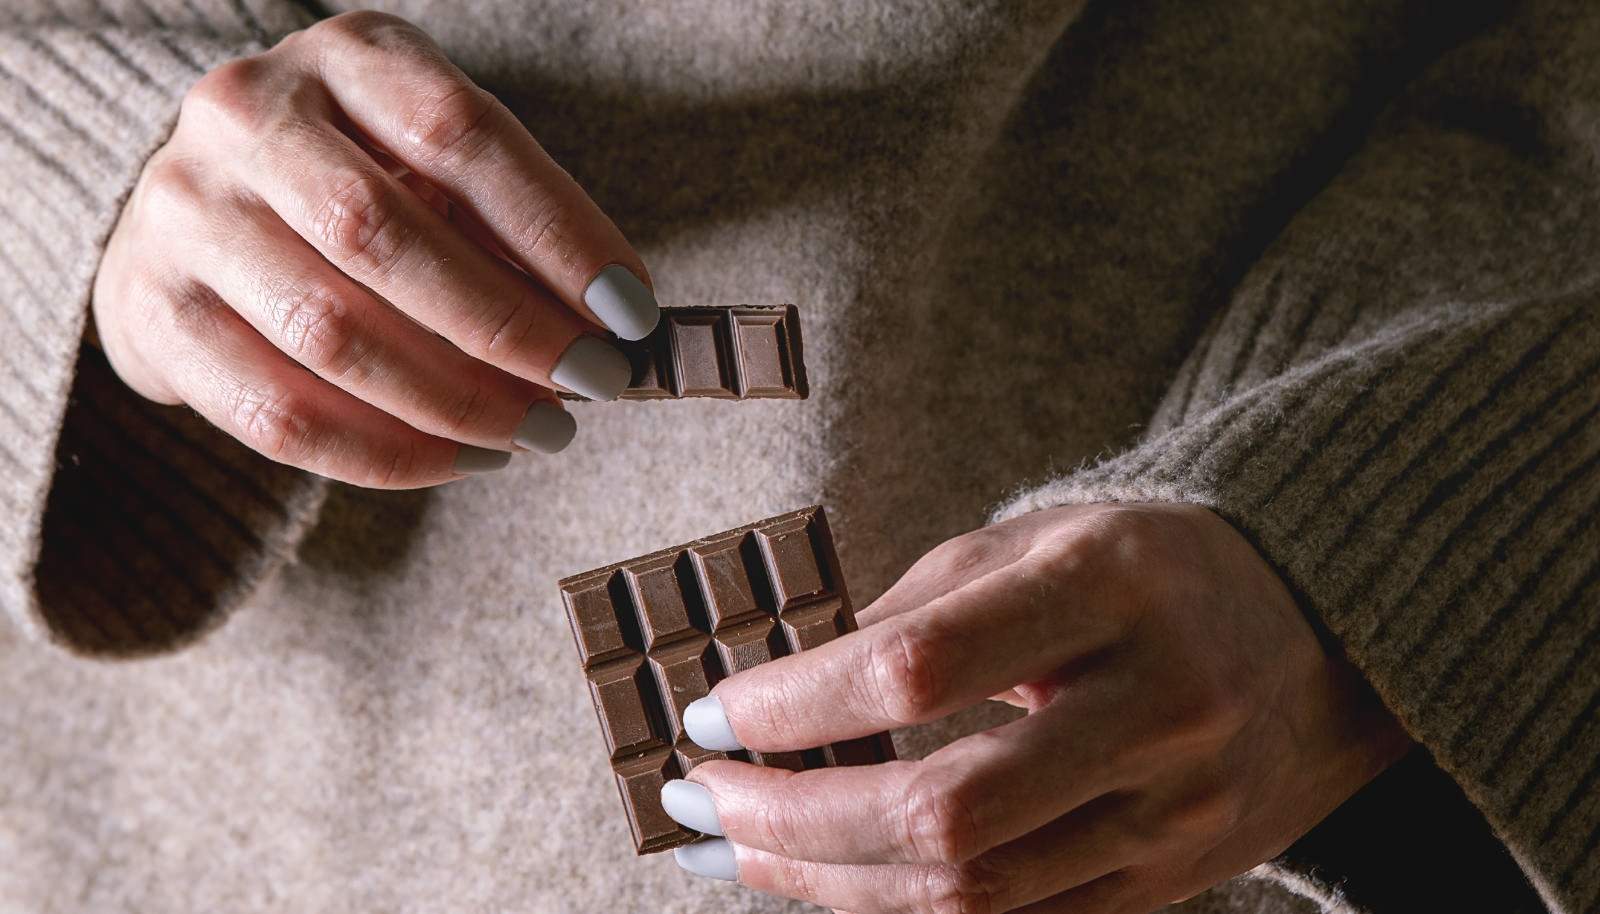 Kada je čokolada dobra za dizanje energije?